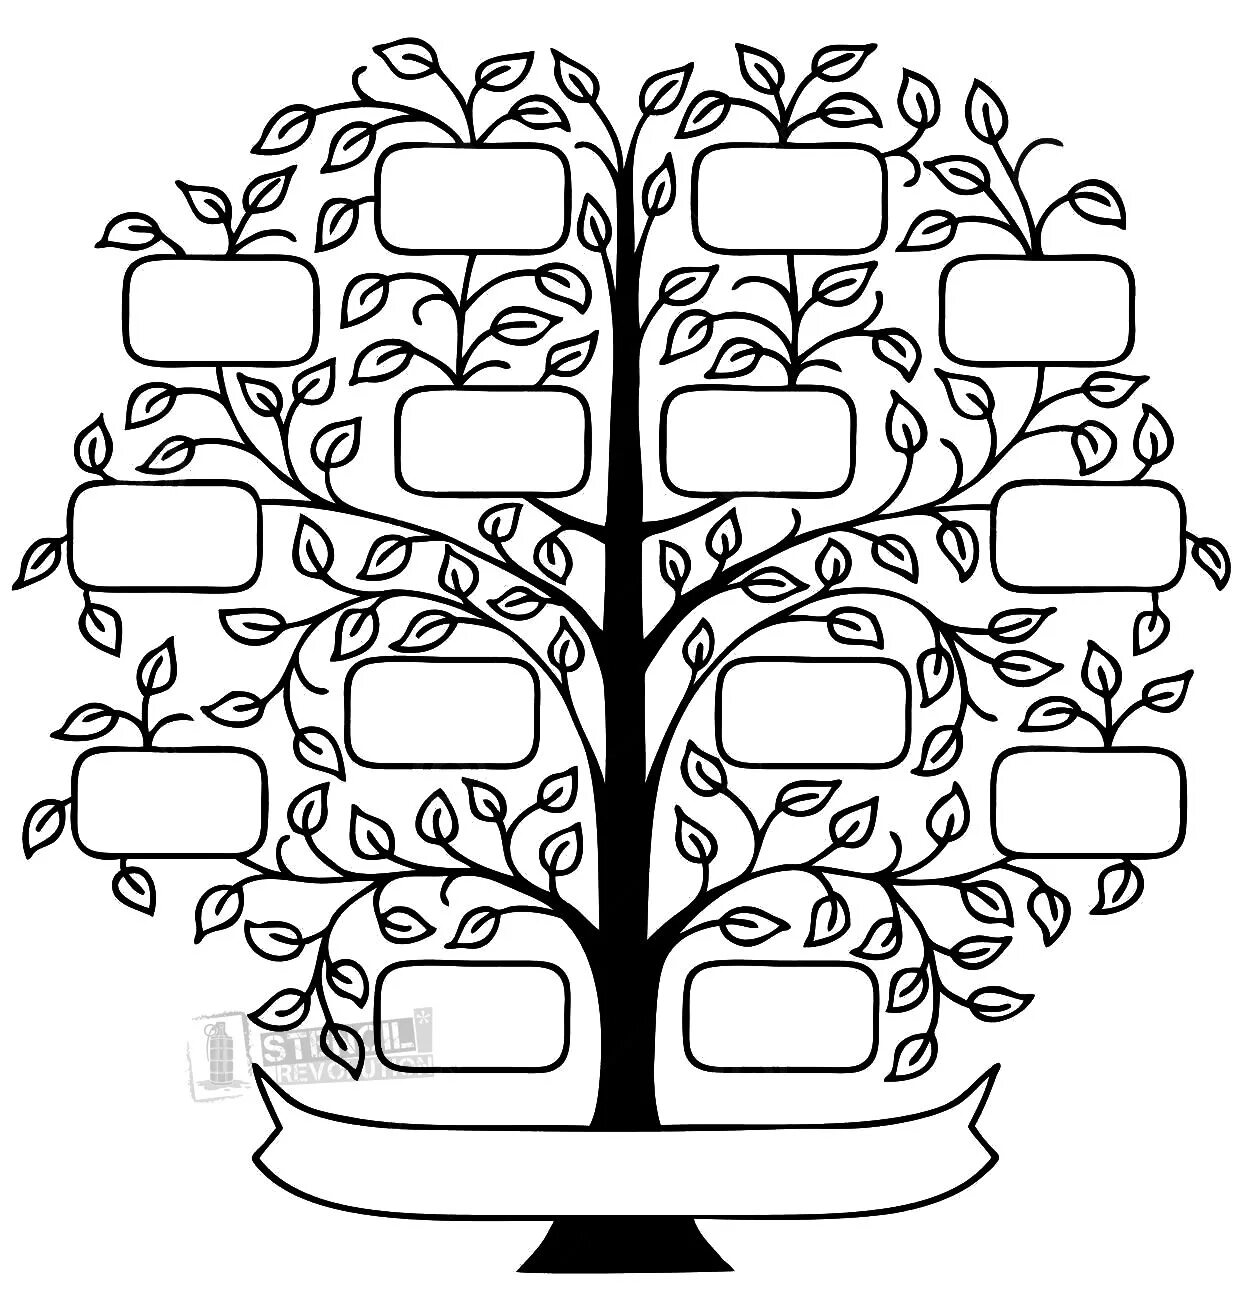 Family tree #7